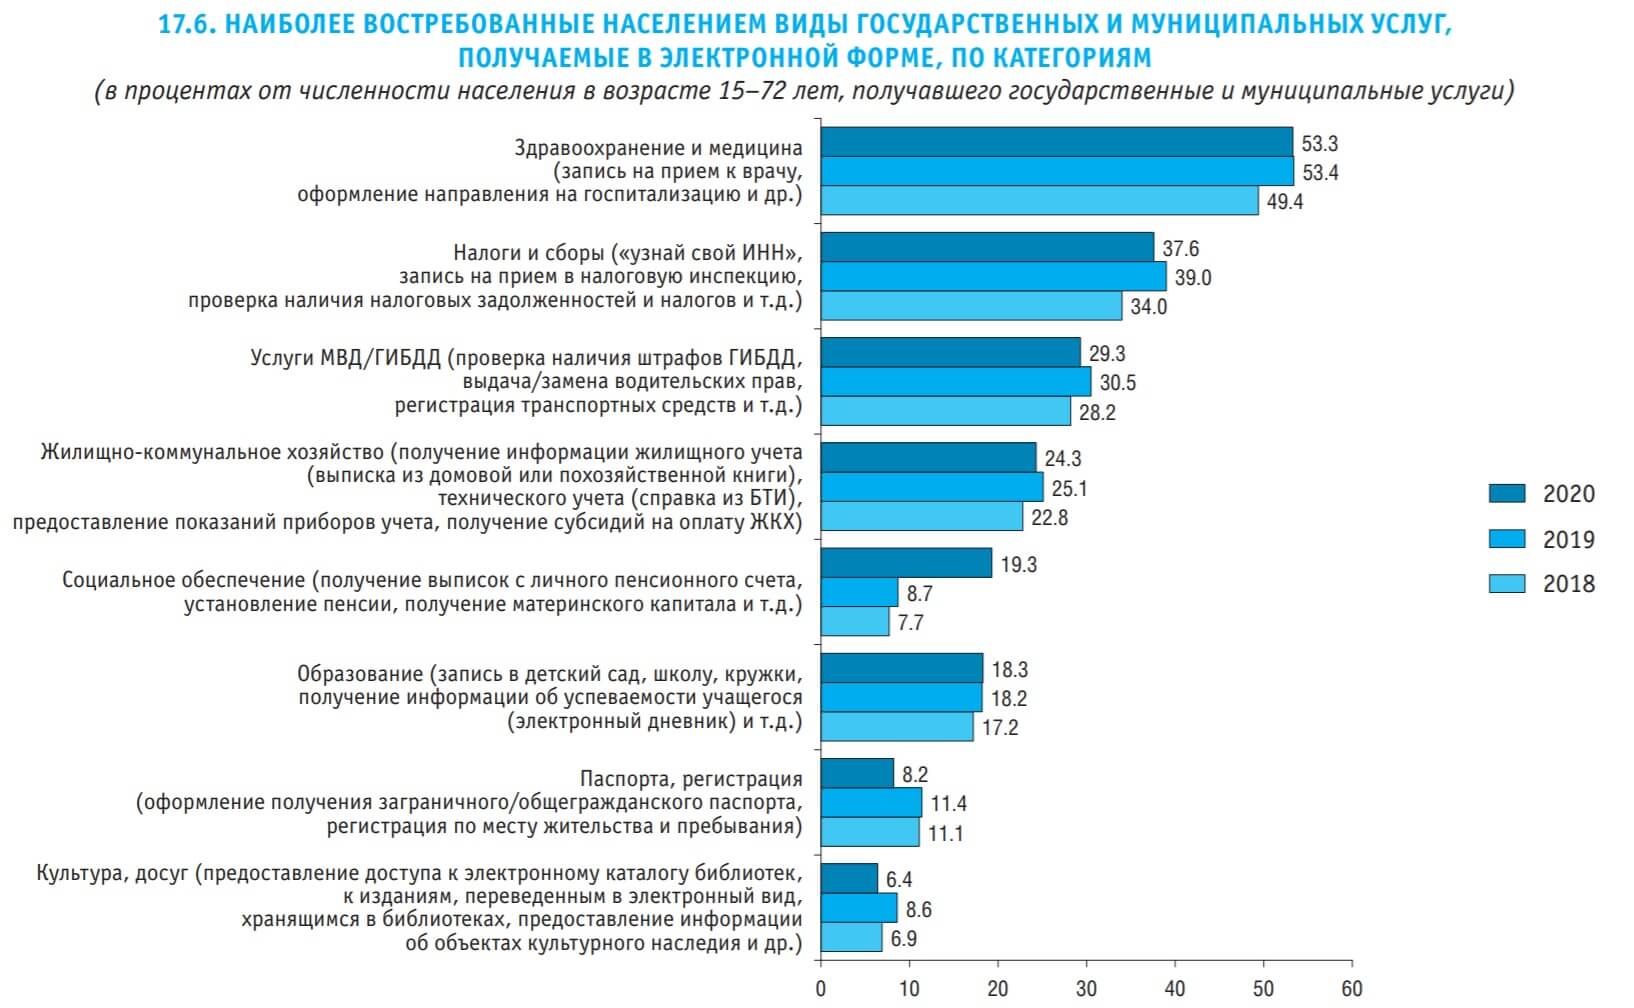 Интернет-бизнес, электронная коммерция и их влияние на рост конкуренции в России